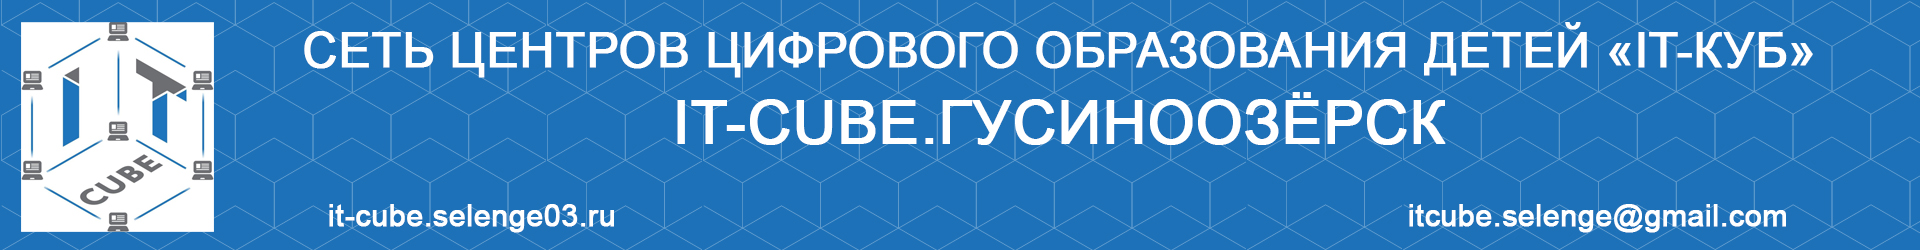 Поздравляем Майдара Батомункуевича и его воспитанников с победой во внутрисетевом конкурсе для IT-кубов